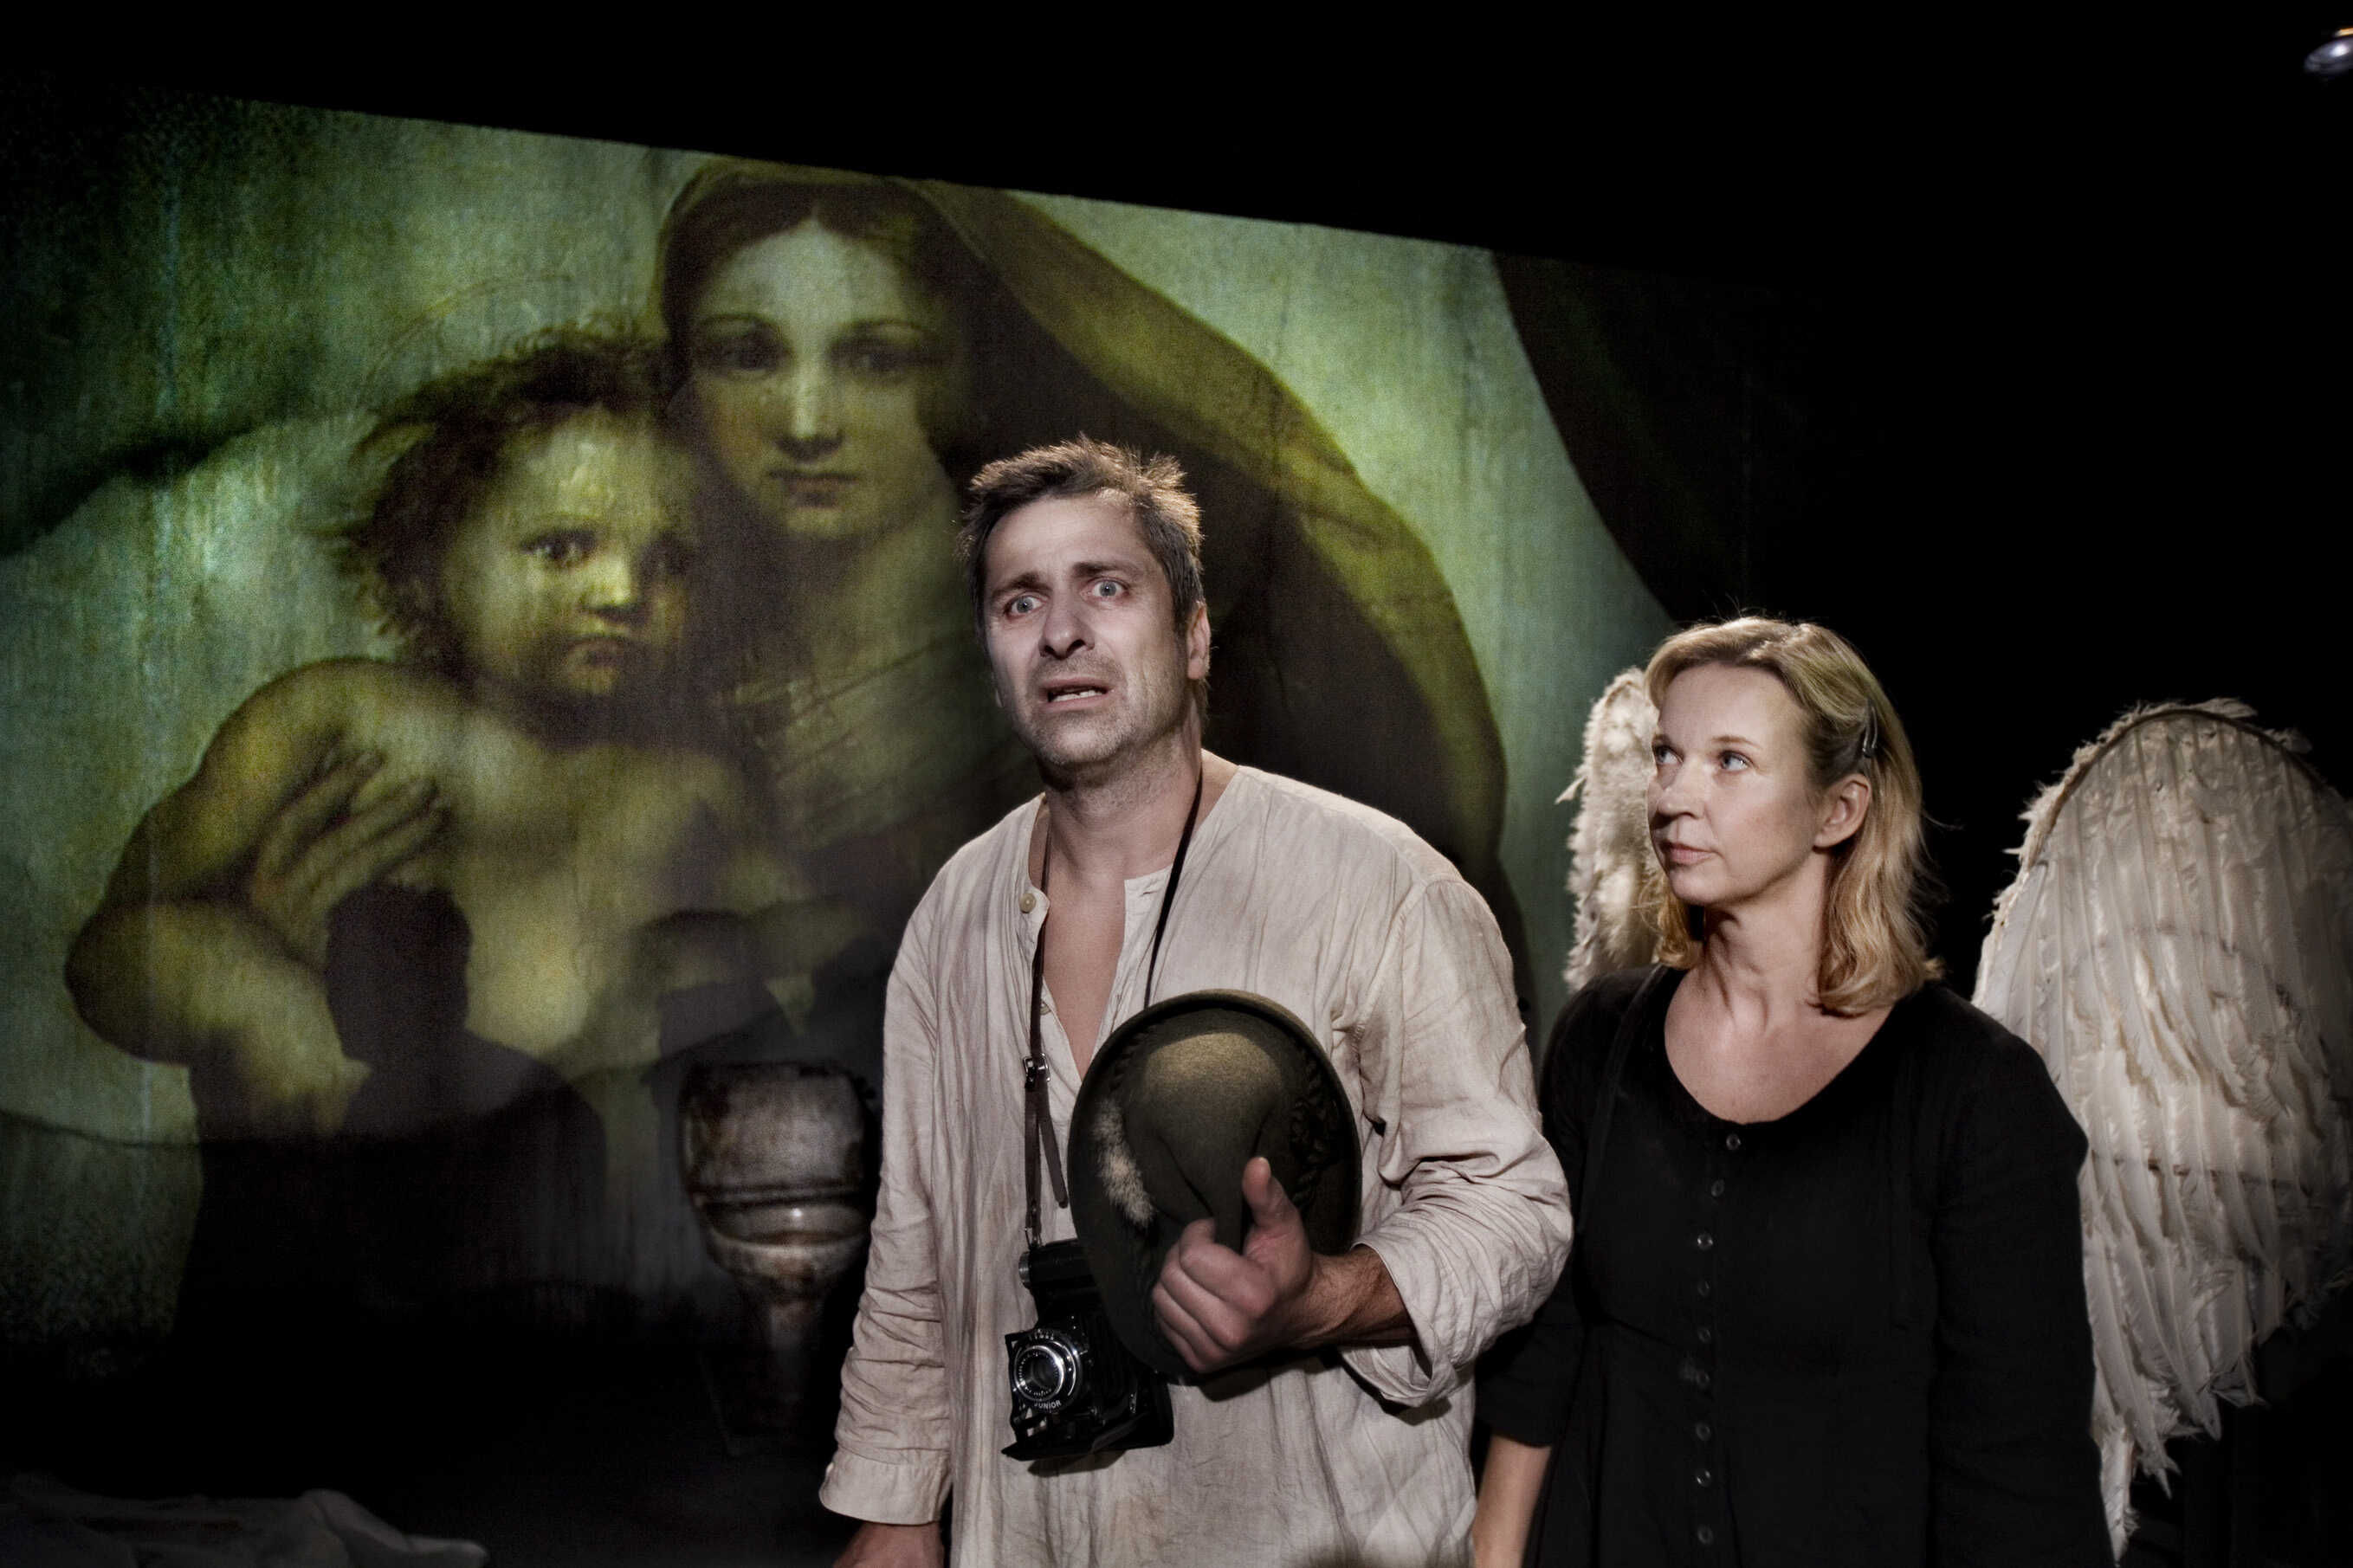 Ole Forsberg och Helena Nilsson i Kärleksköparen - Fröding naked, premiär 27 september på Bryggan/Marionetteatern, Stockholms stadsteater.